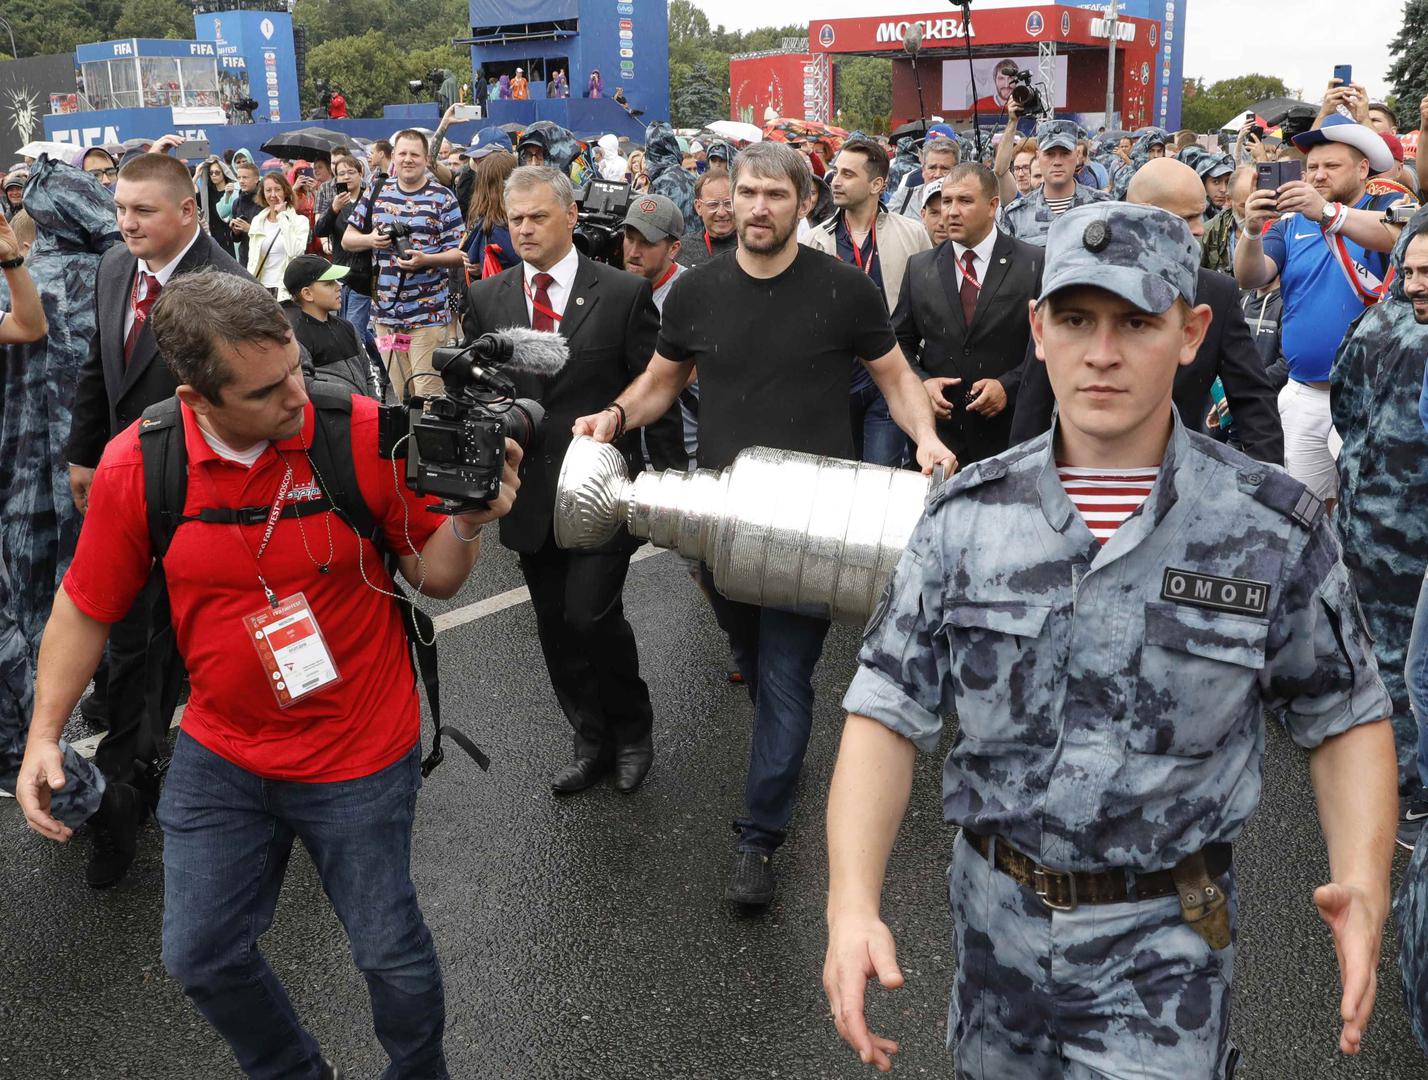 Kapetan Washington Capitalsa je donio pehar u znak podrške ruskim nogometašima u susretu protiv vatrenih